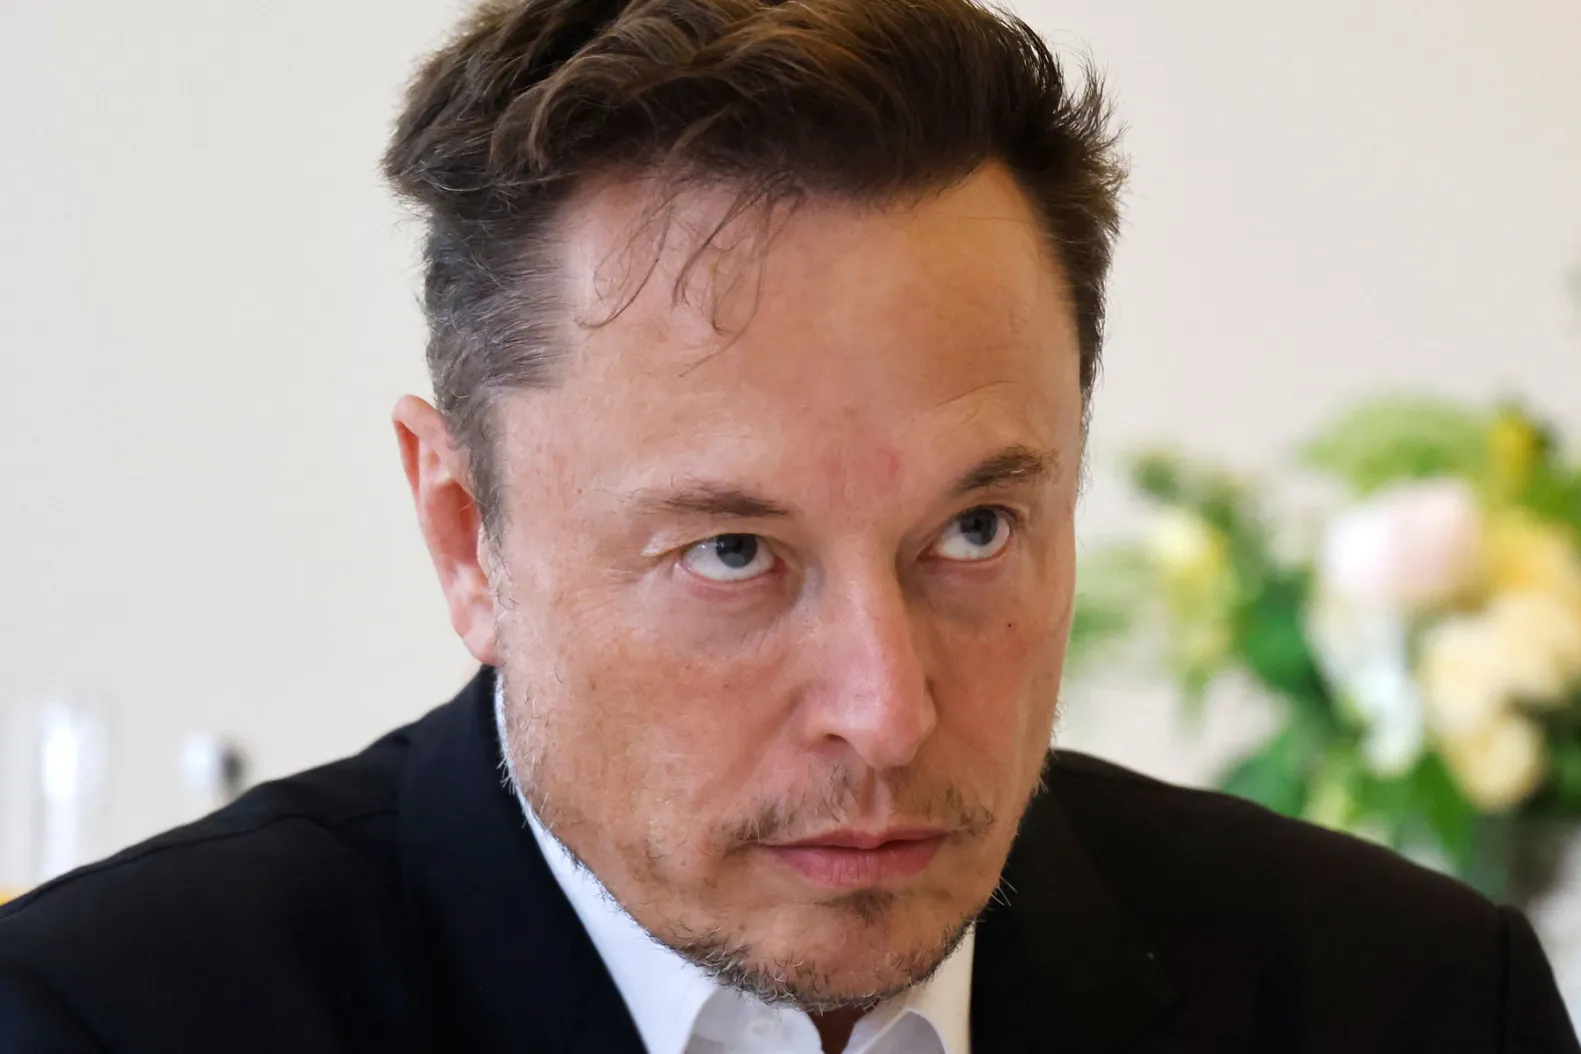 Elon Musk Faces Backlash for Sharing Shocking Video Amid Haiti Crisis